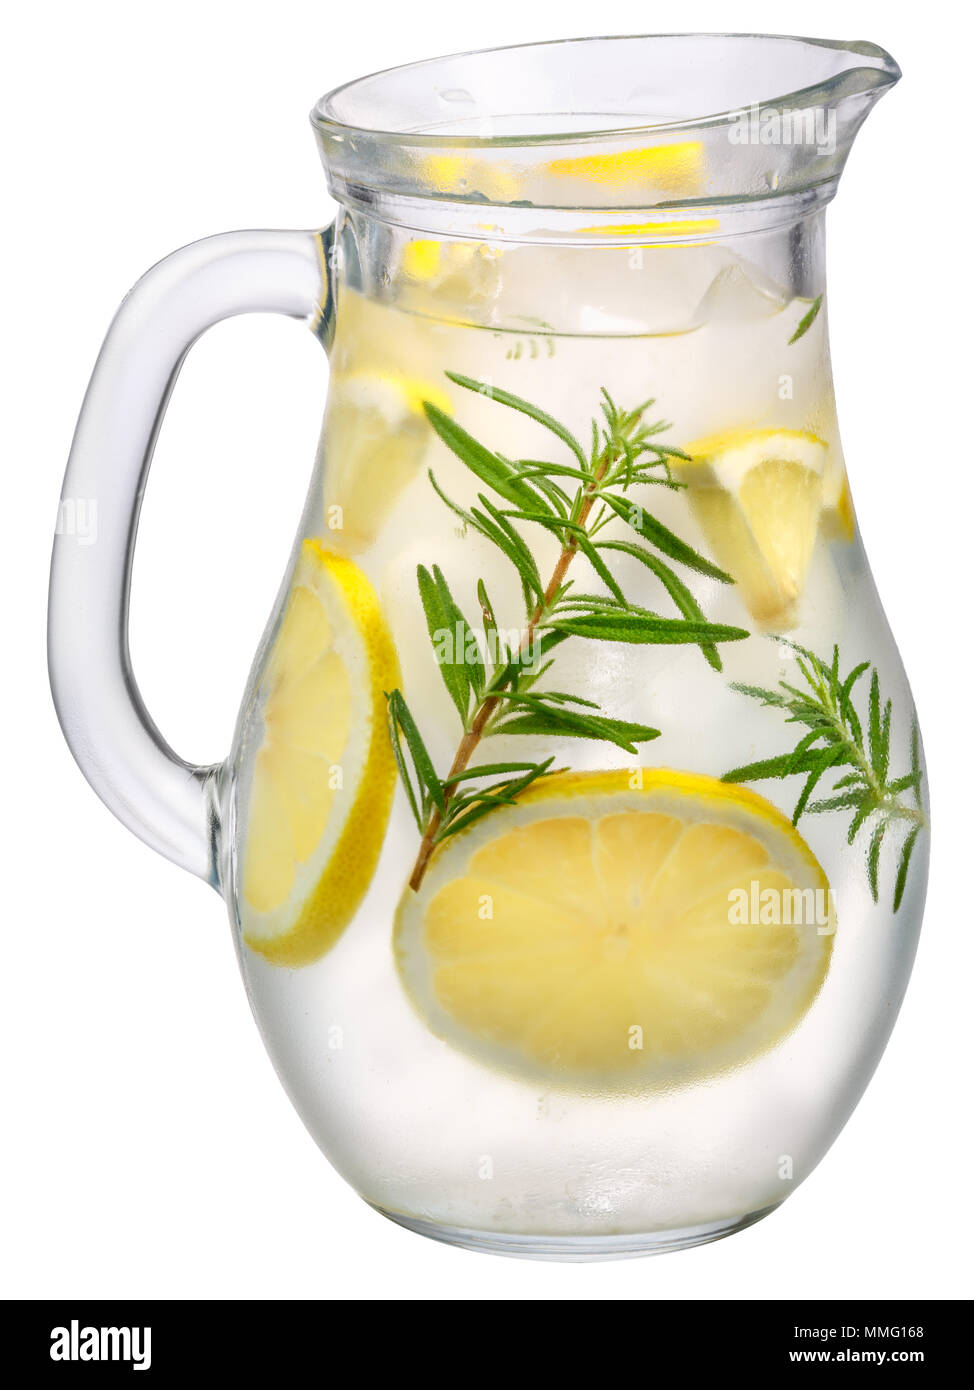 Carafe d'eau ou detox citron romarin limonade Banque D'Images